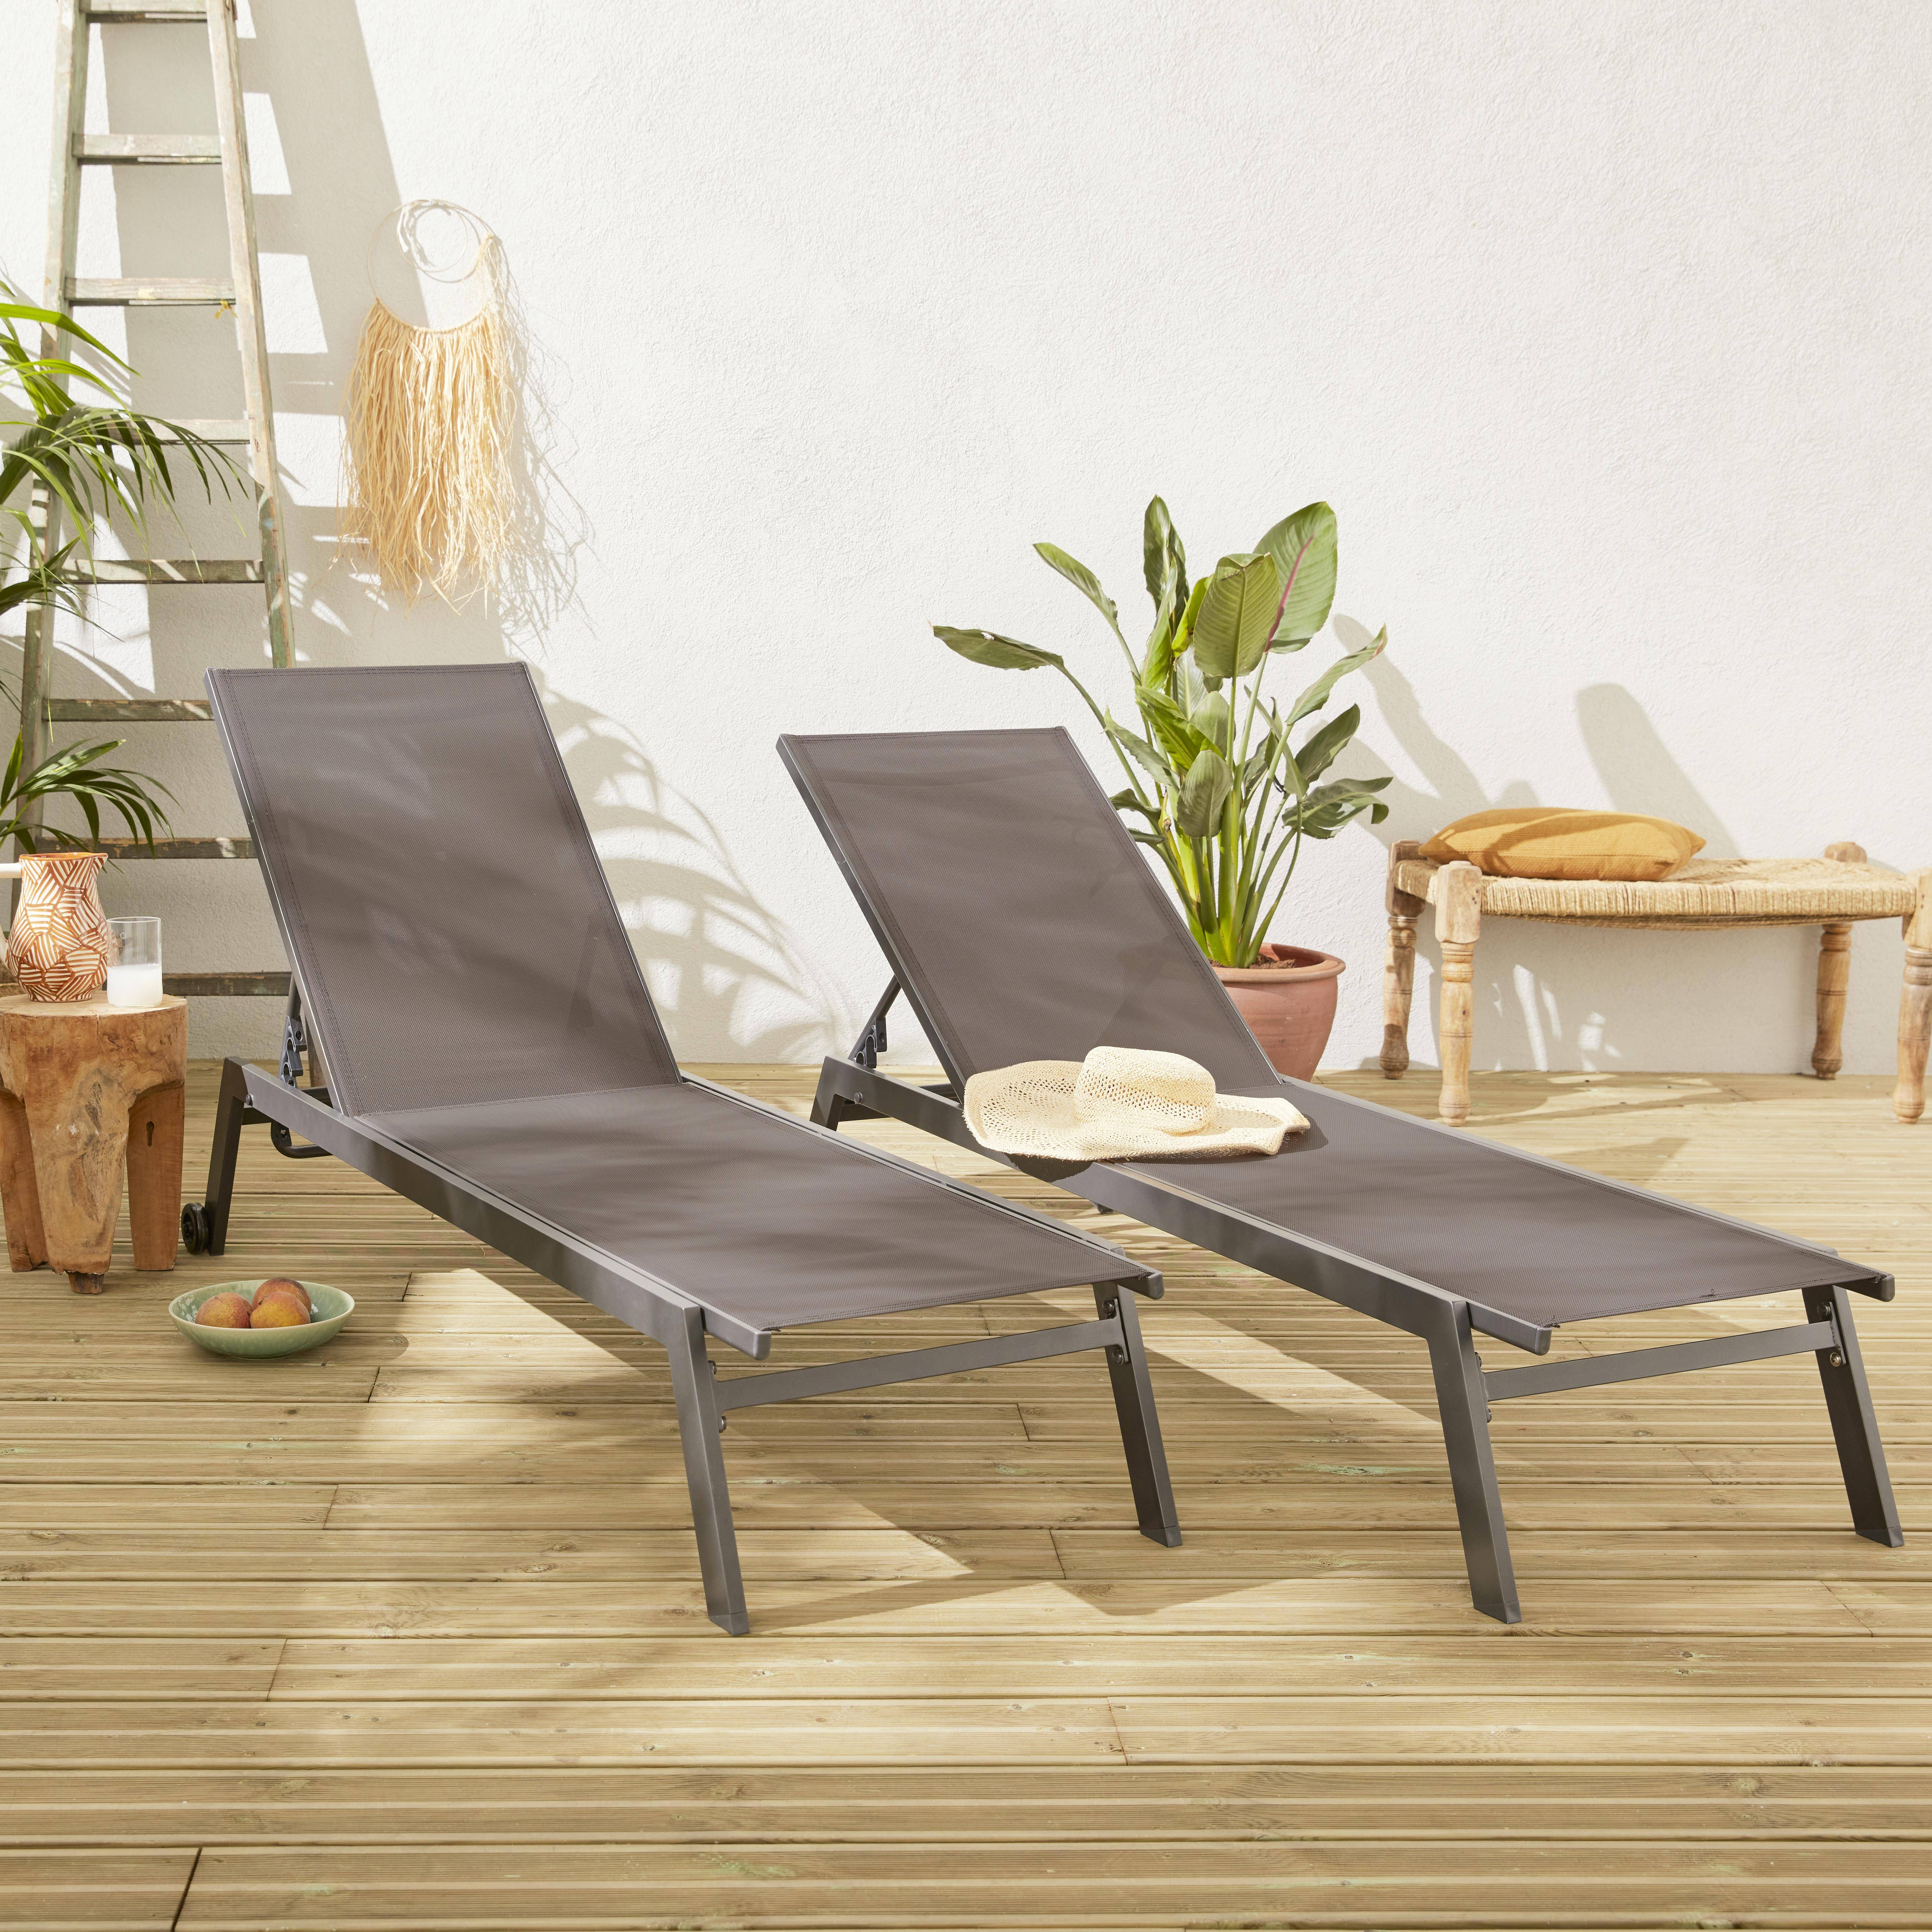 Set mit 2 ELSA Sonnenliegen aus grauem Aluminium und dunkelgrauem Textilene, Liegestühle mit mehreren Positionen und Rädern,sweeek,Photo1